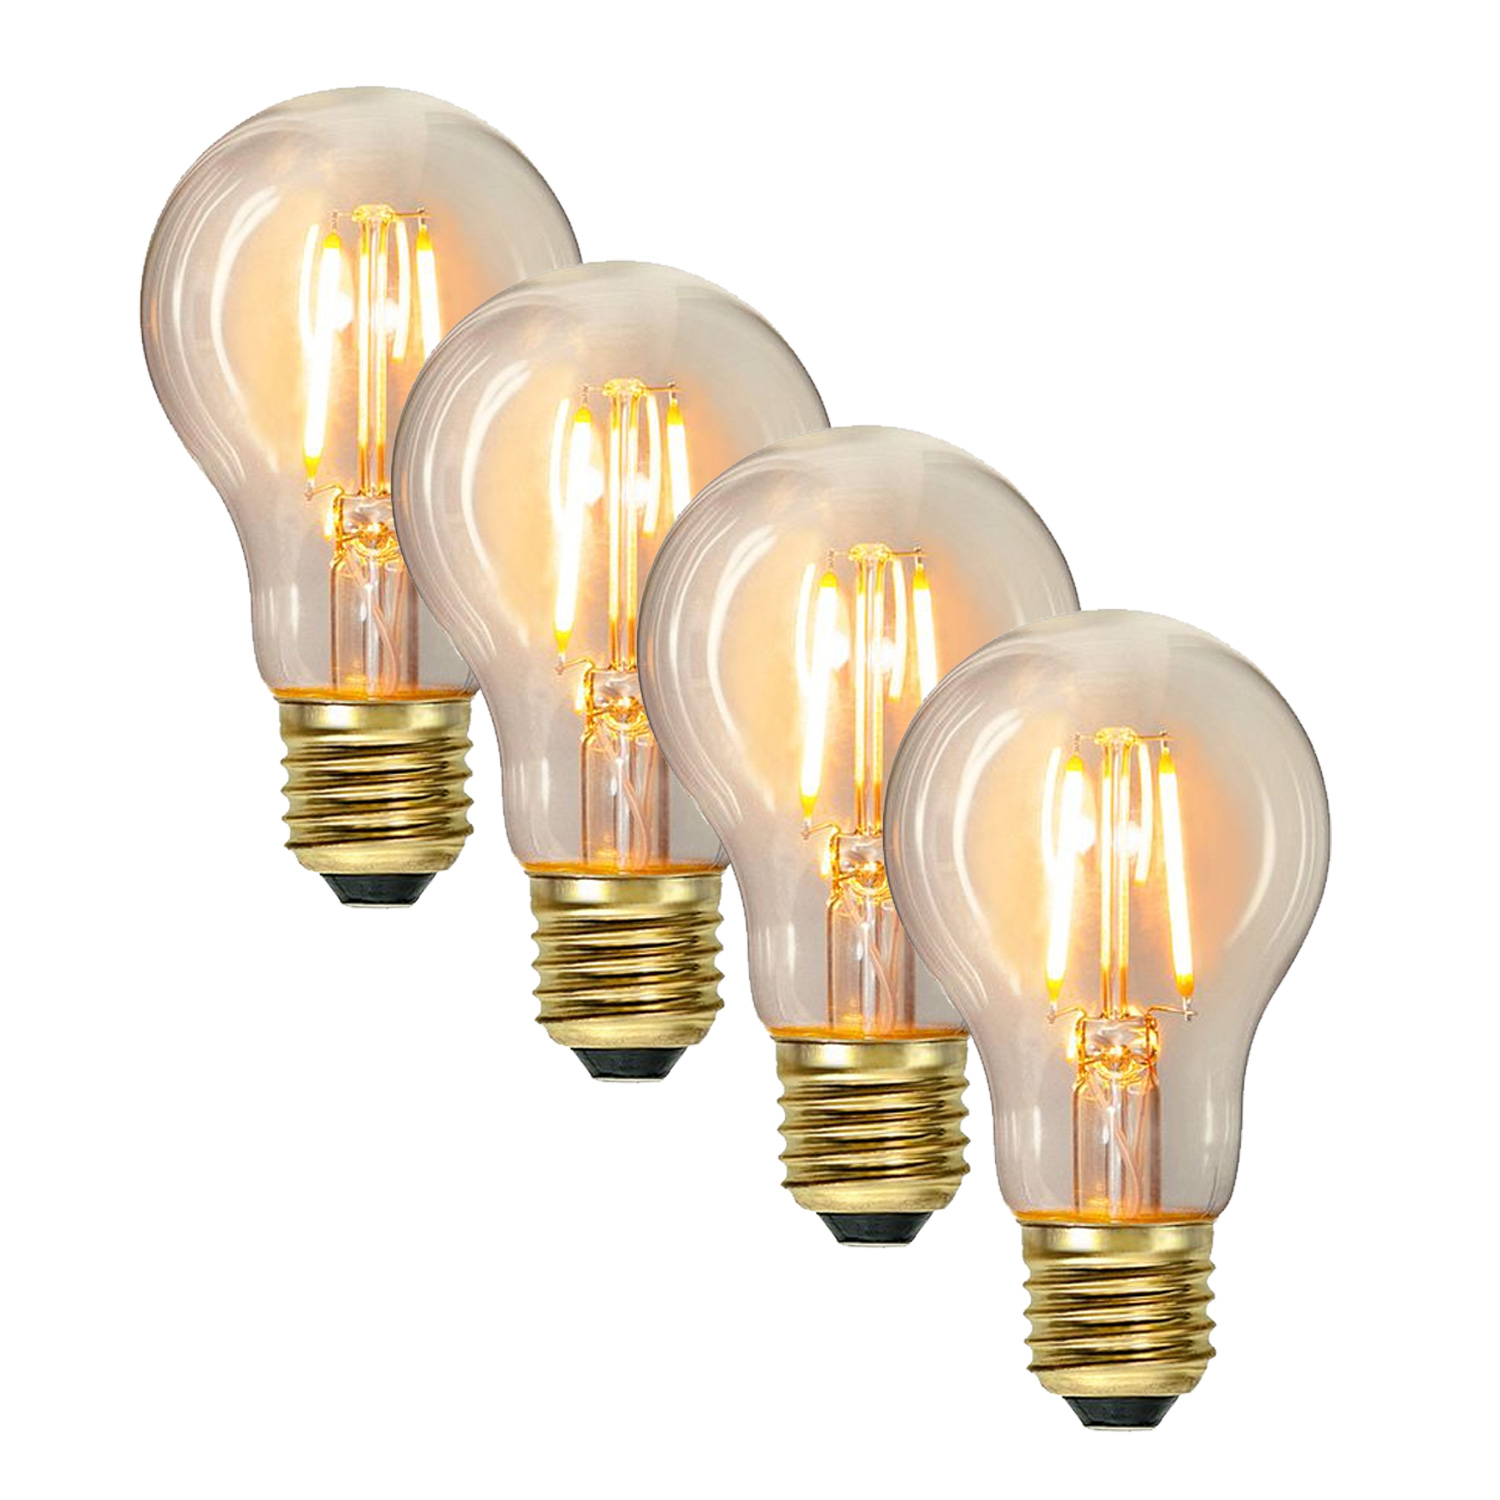 Illu-/Partylichterkette 20m - Außenlichterkette weiß - Made in Germany- 20 Edison LED Filamentlampen